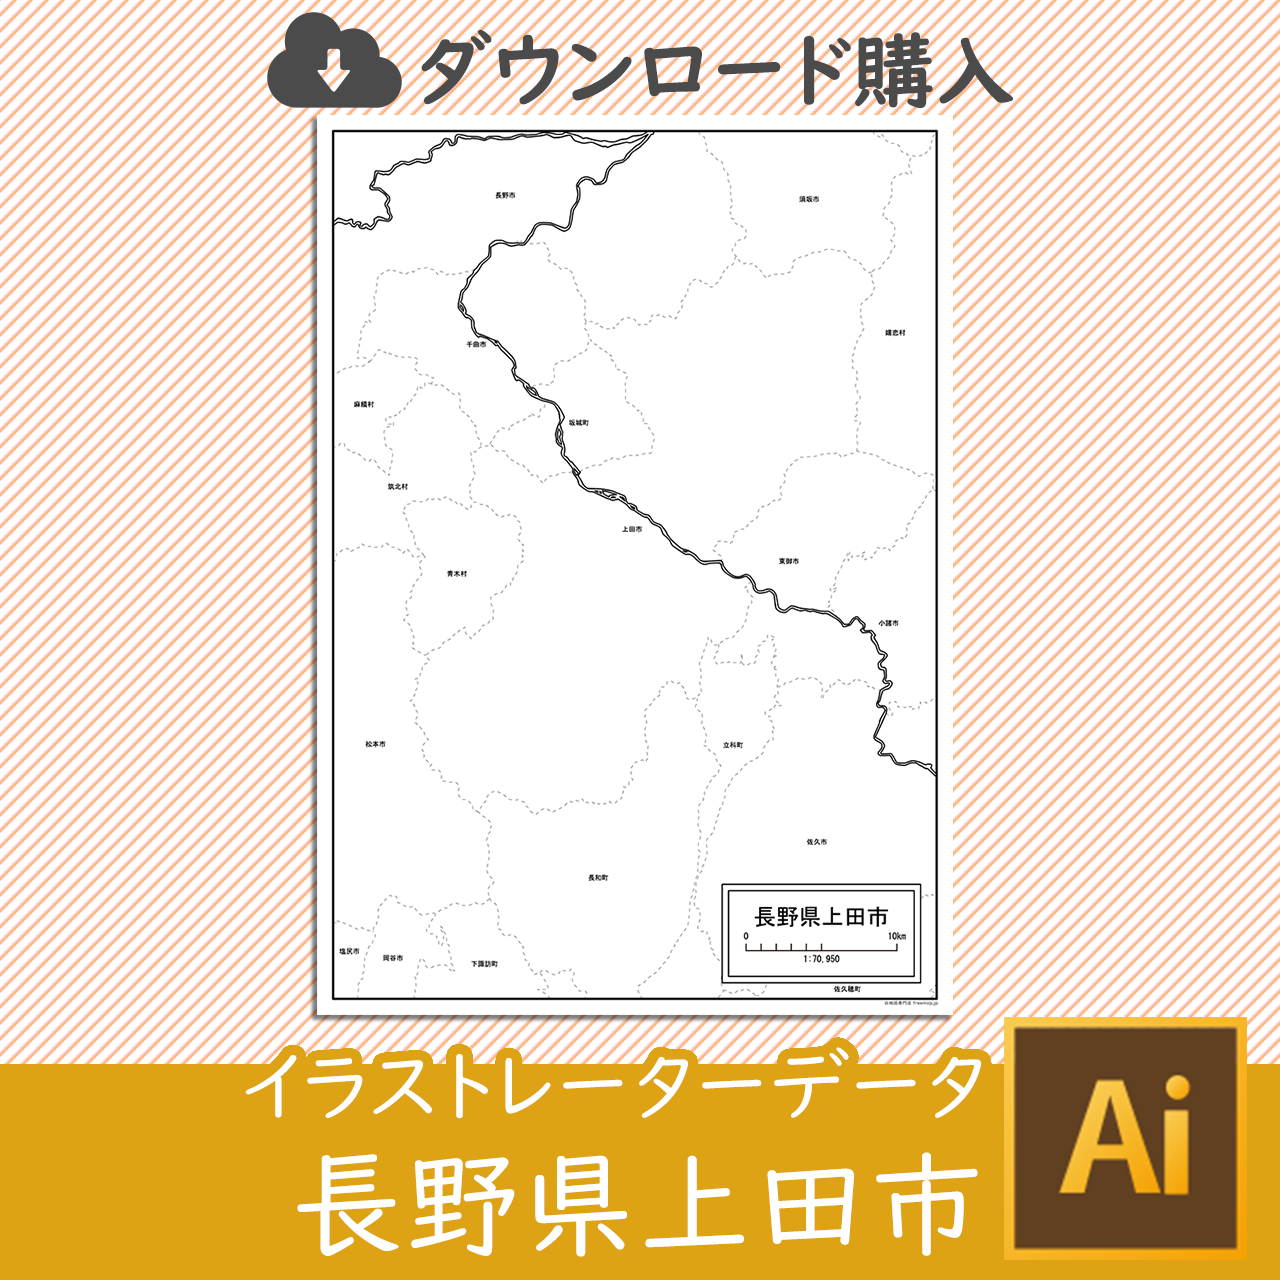 上田市のaiデータのサムネイル画像